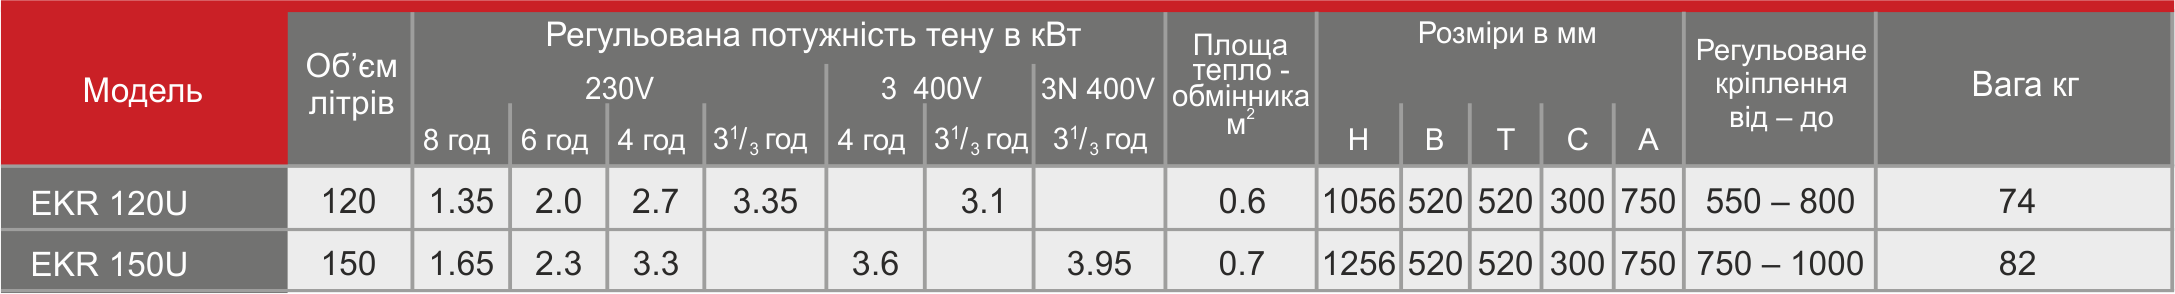 Tabel EKR Size Ukr